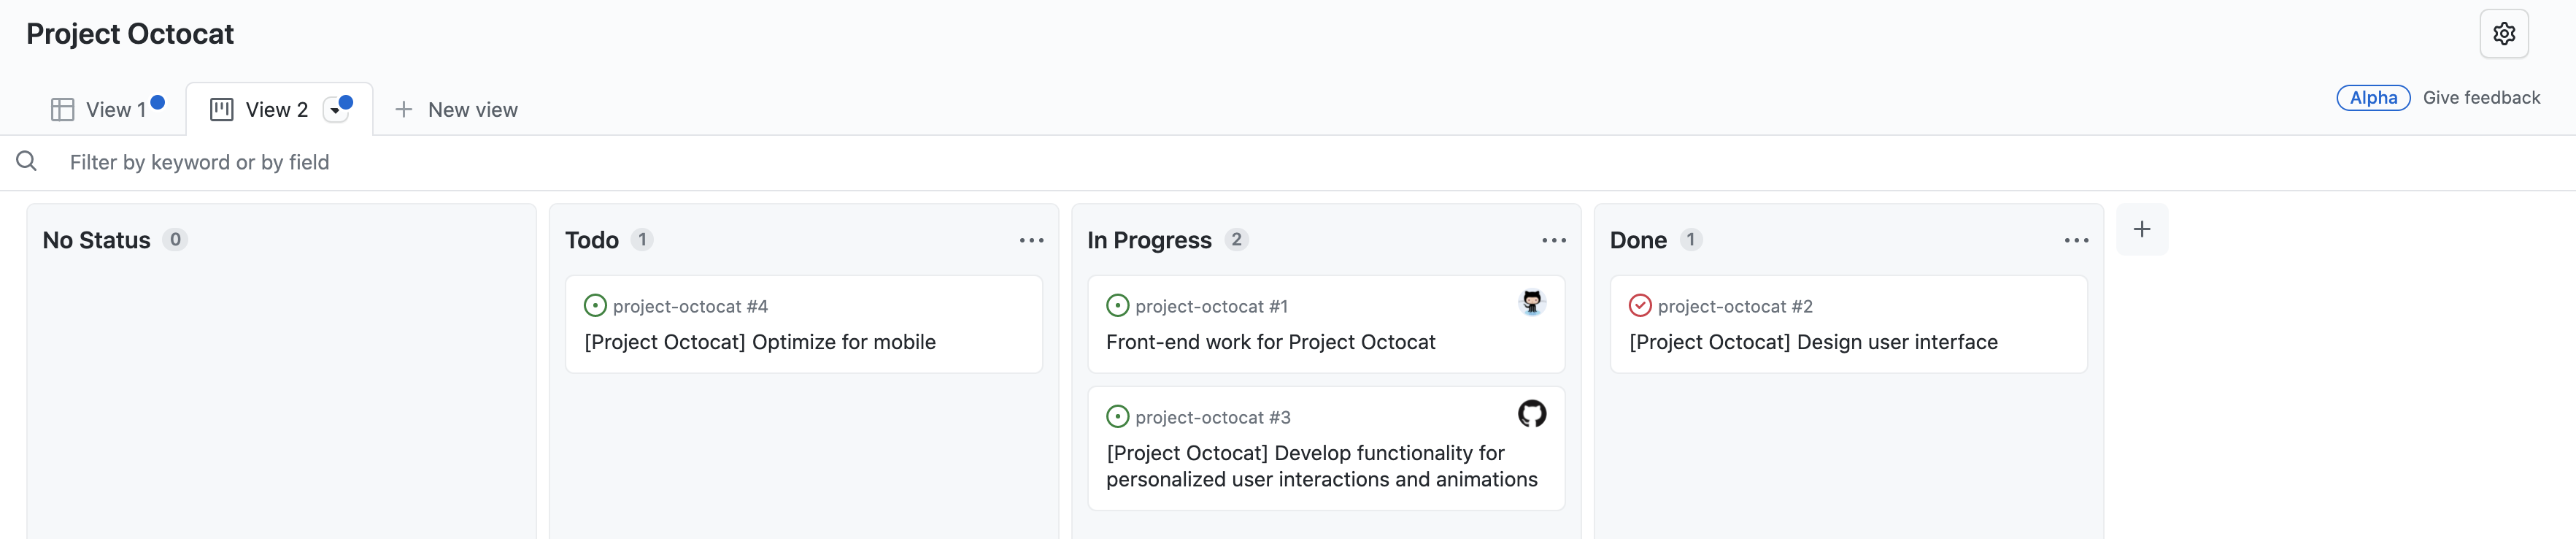 "상태 없음", "할 일", "진행 중", "완료"에 대한 열로 구성된 문제가 있는 "Project Octocat" 프로젝트의 보드 보기 스크린샷